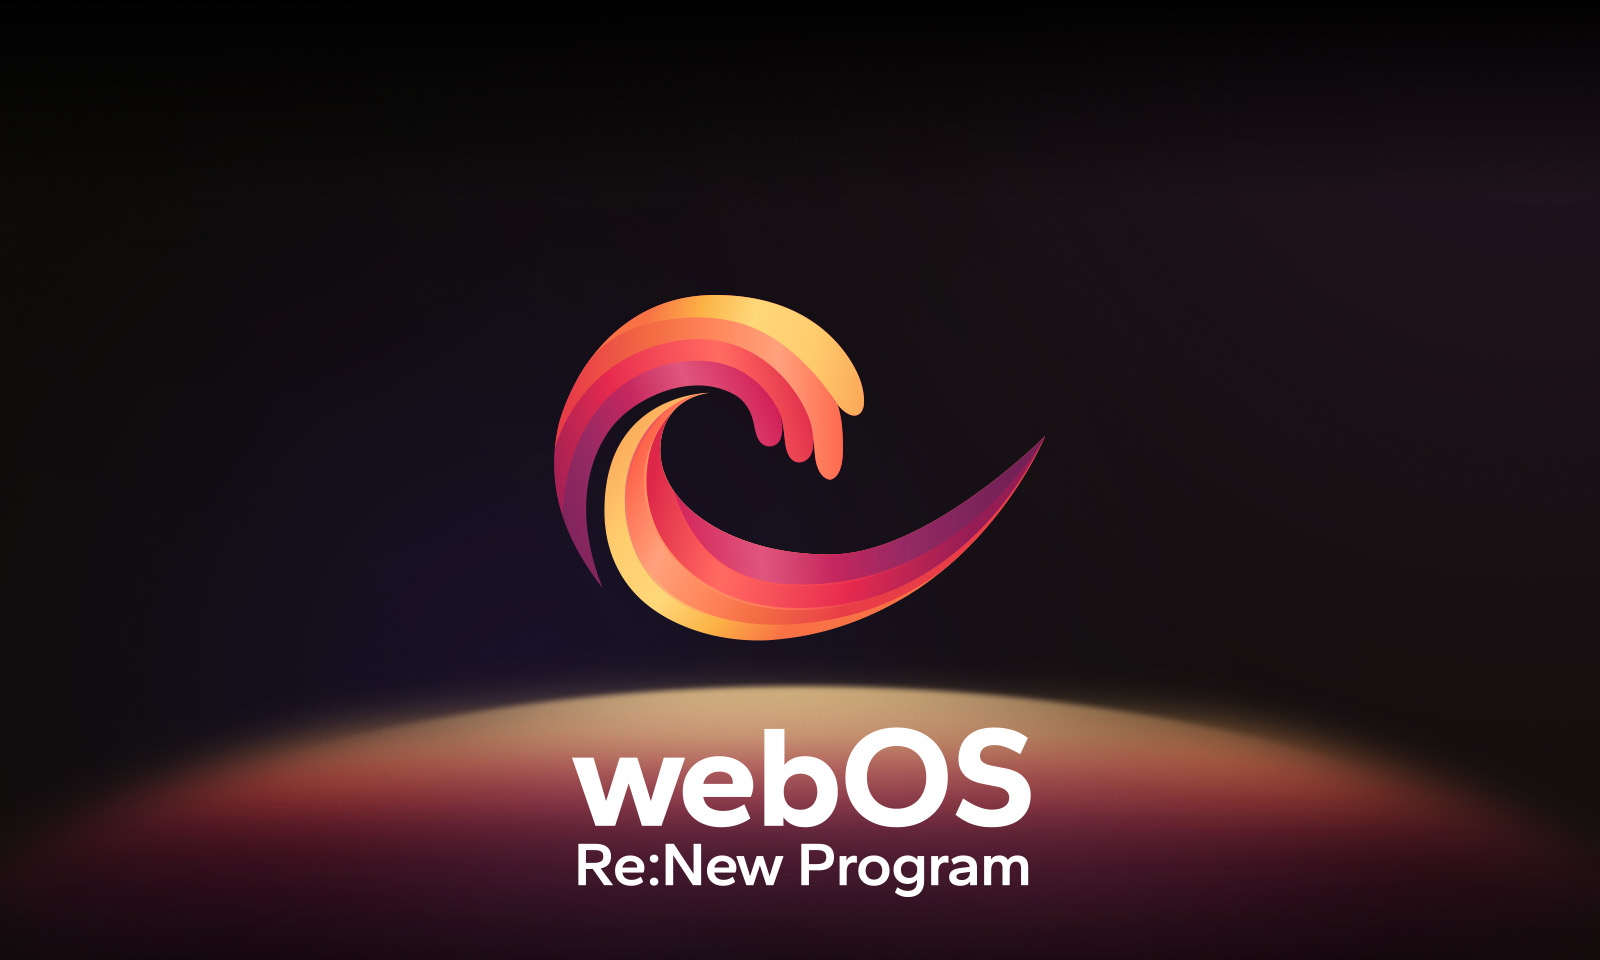 لوگوی webOS بالای مرکز یک پس‌زمینه سیاه معلق است و فضای زیر با لوگوهای قرمز، نارنجی و زرد نورانی شده است. کلمات "webOS Re:New Program" در زیر لوگو هستند.